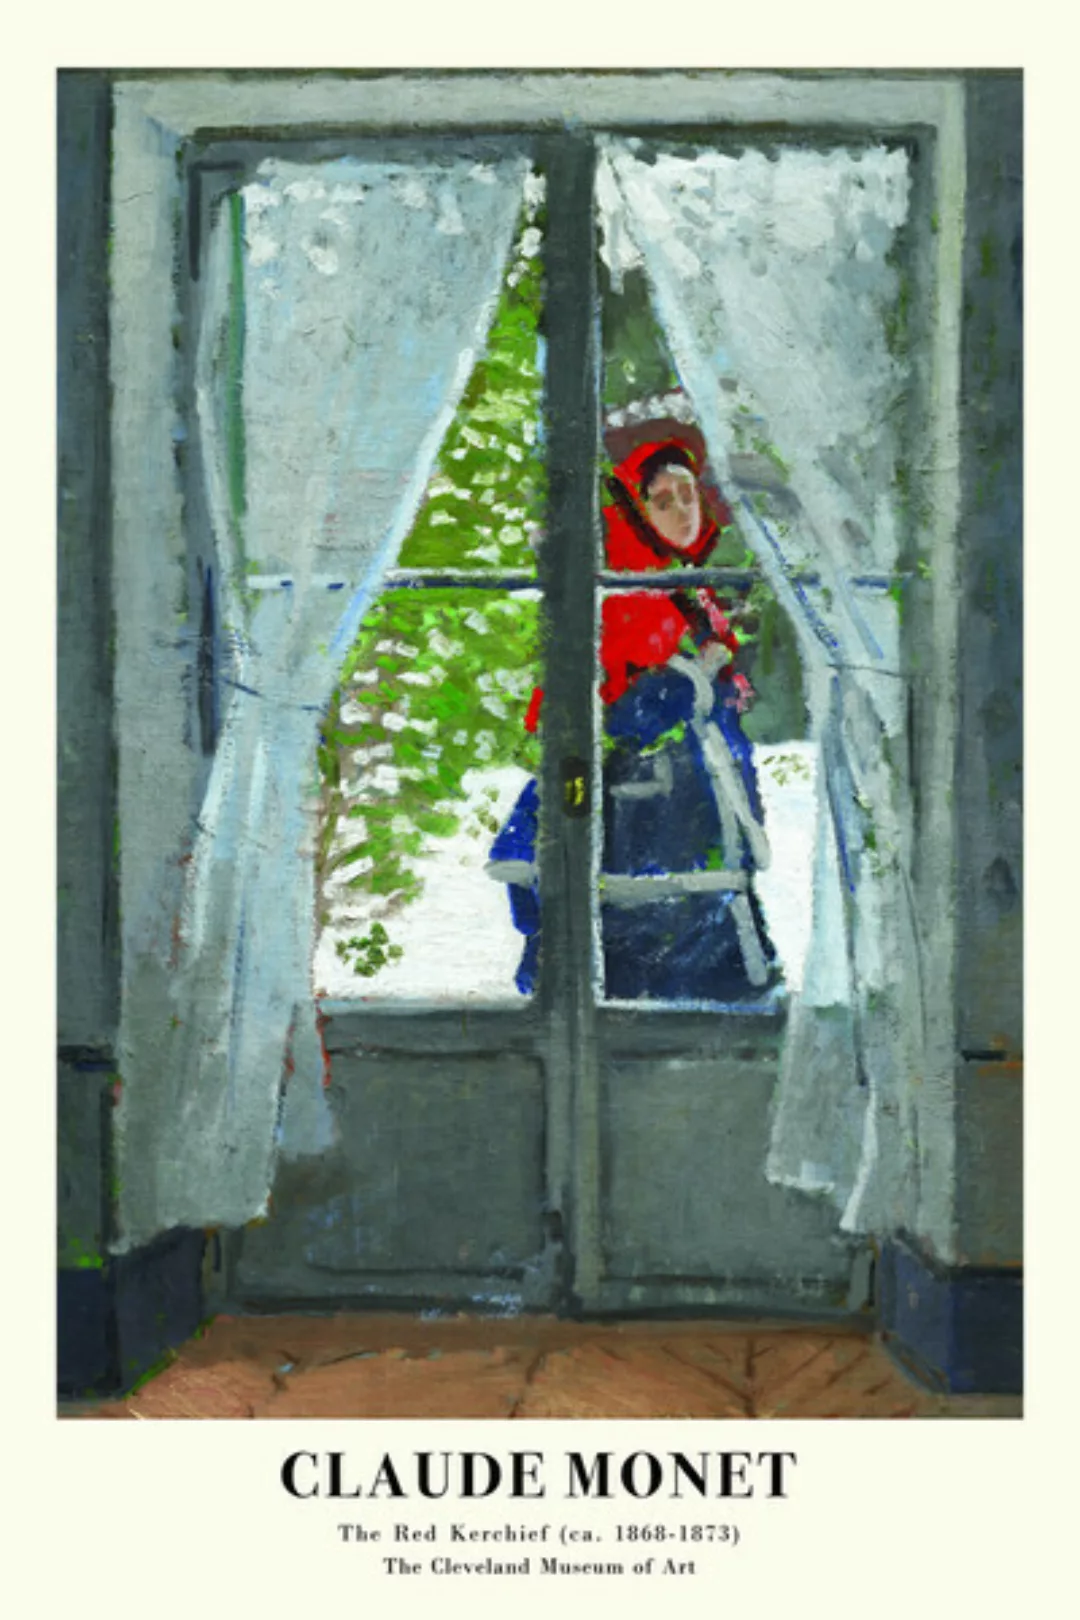 Poster / Leinwandbild - Claude Monet: Das Rote Halstuch günstig online kaufen